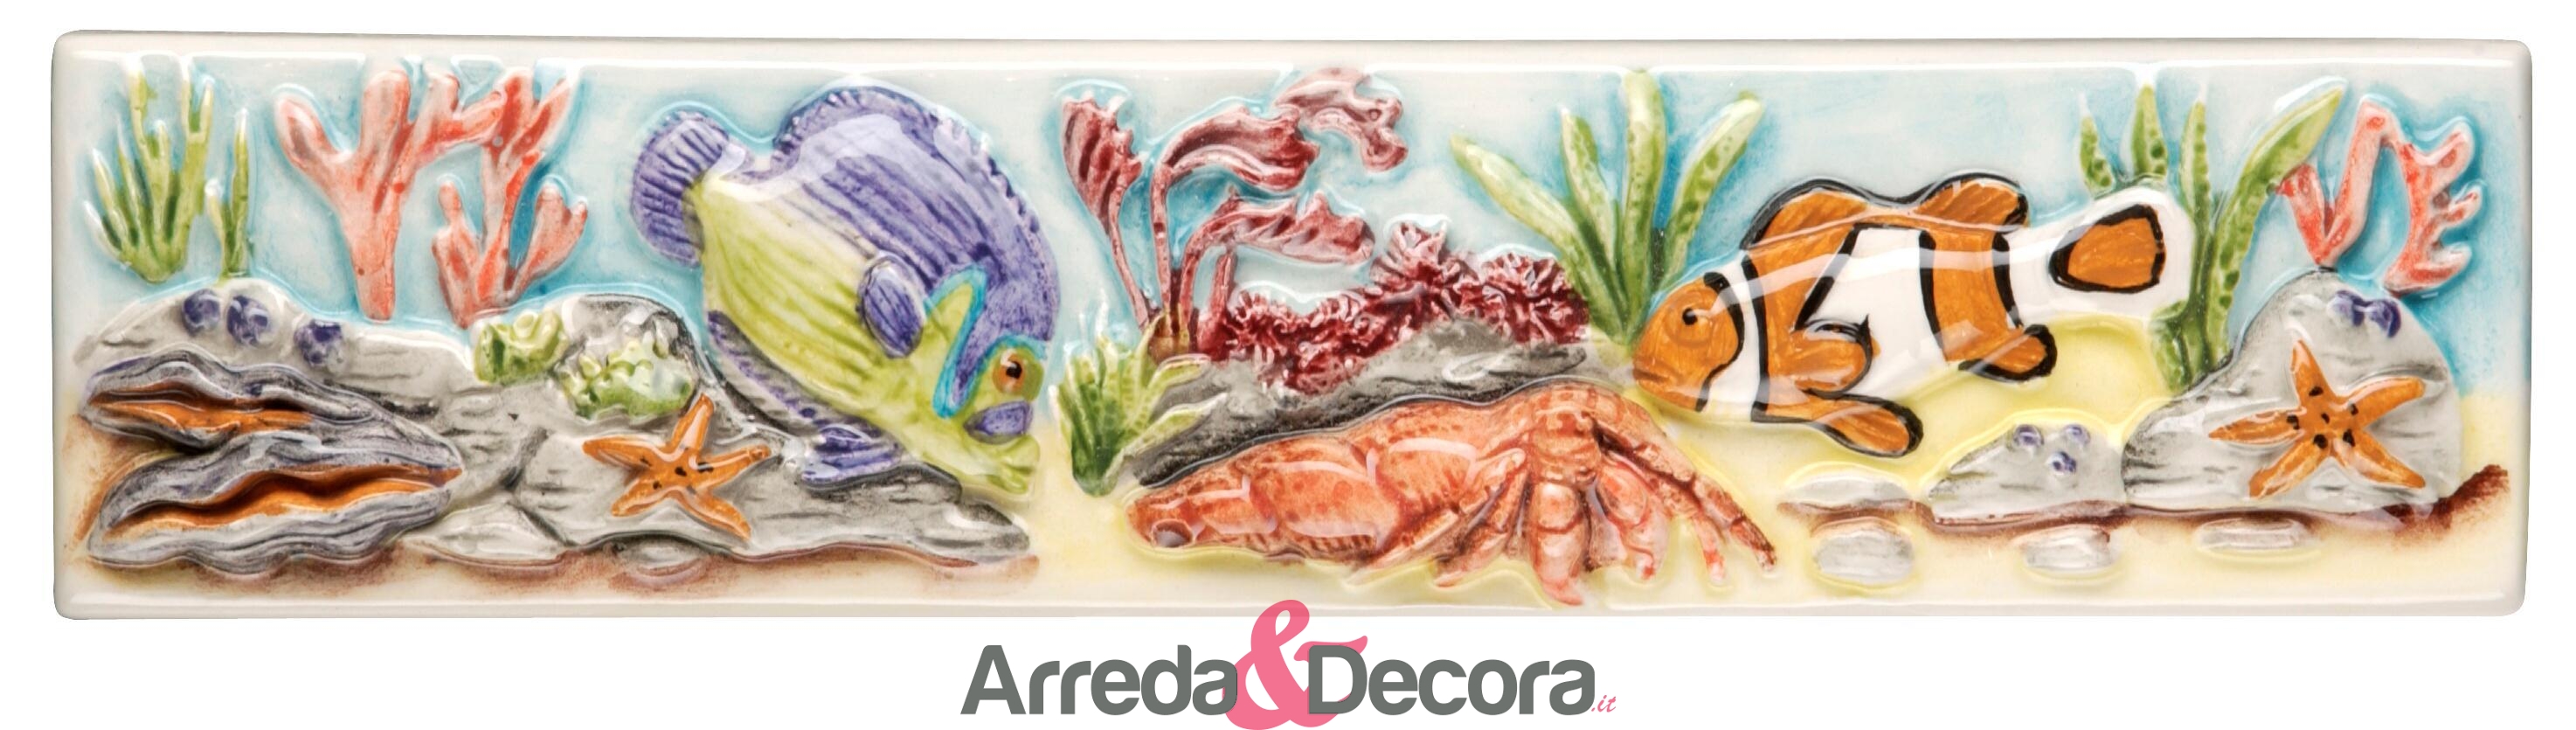 decoro-5x20-pesci-barriera-corallina-2